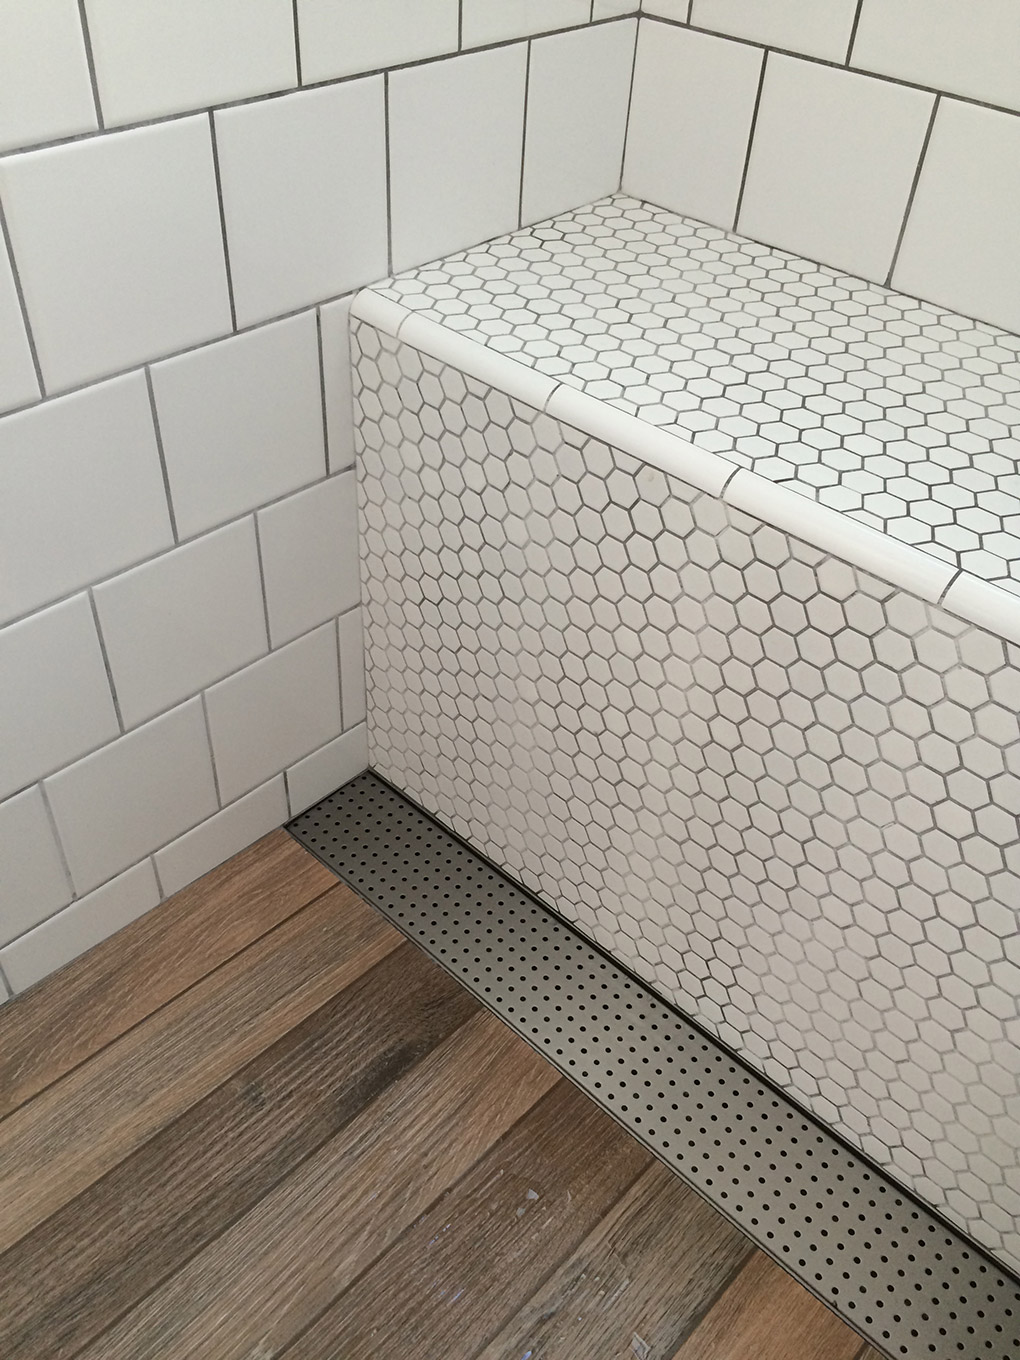 ralo linear inox no piso de madeira do banheiro retro com azulejo branco